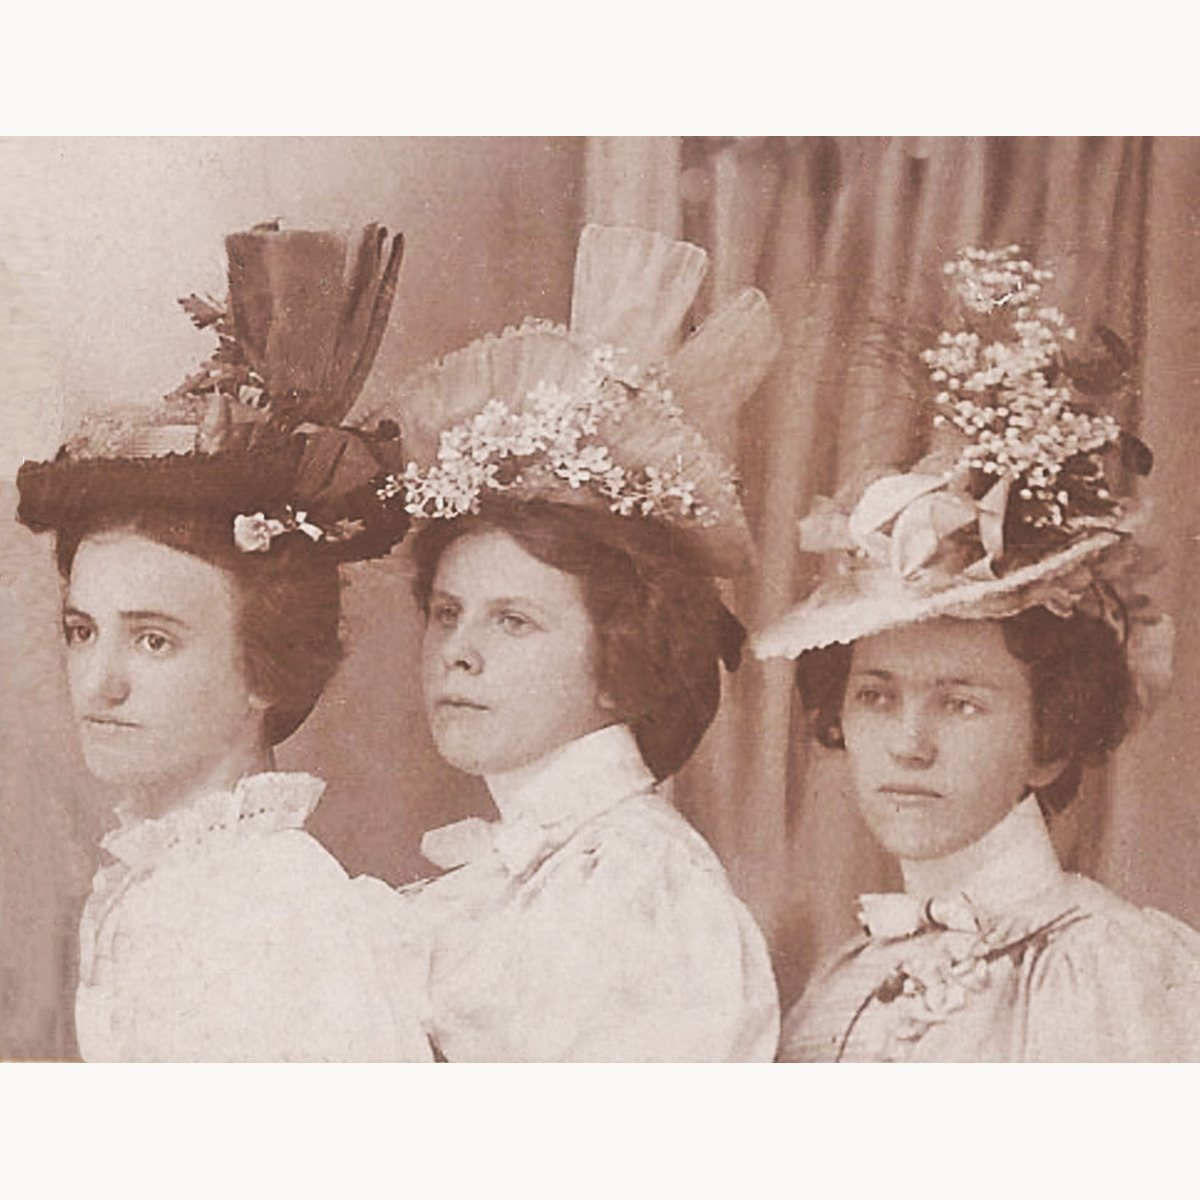 Edwardian women in hats